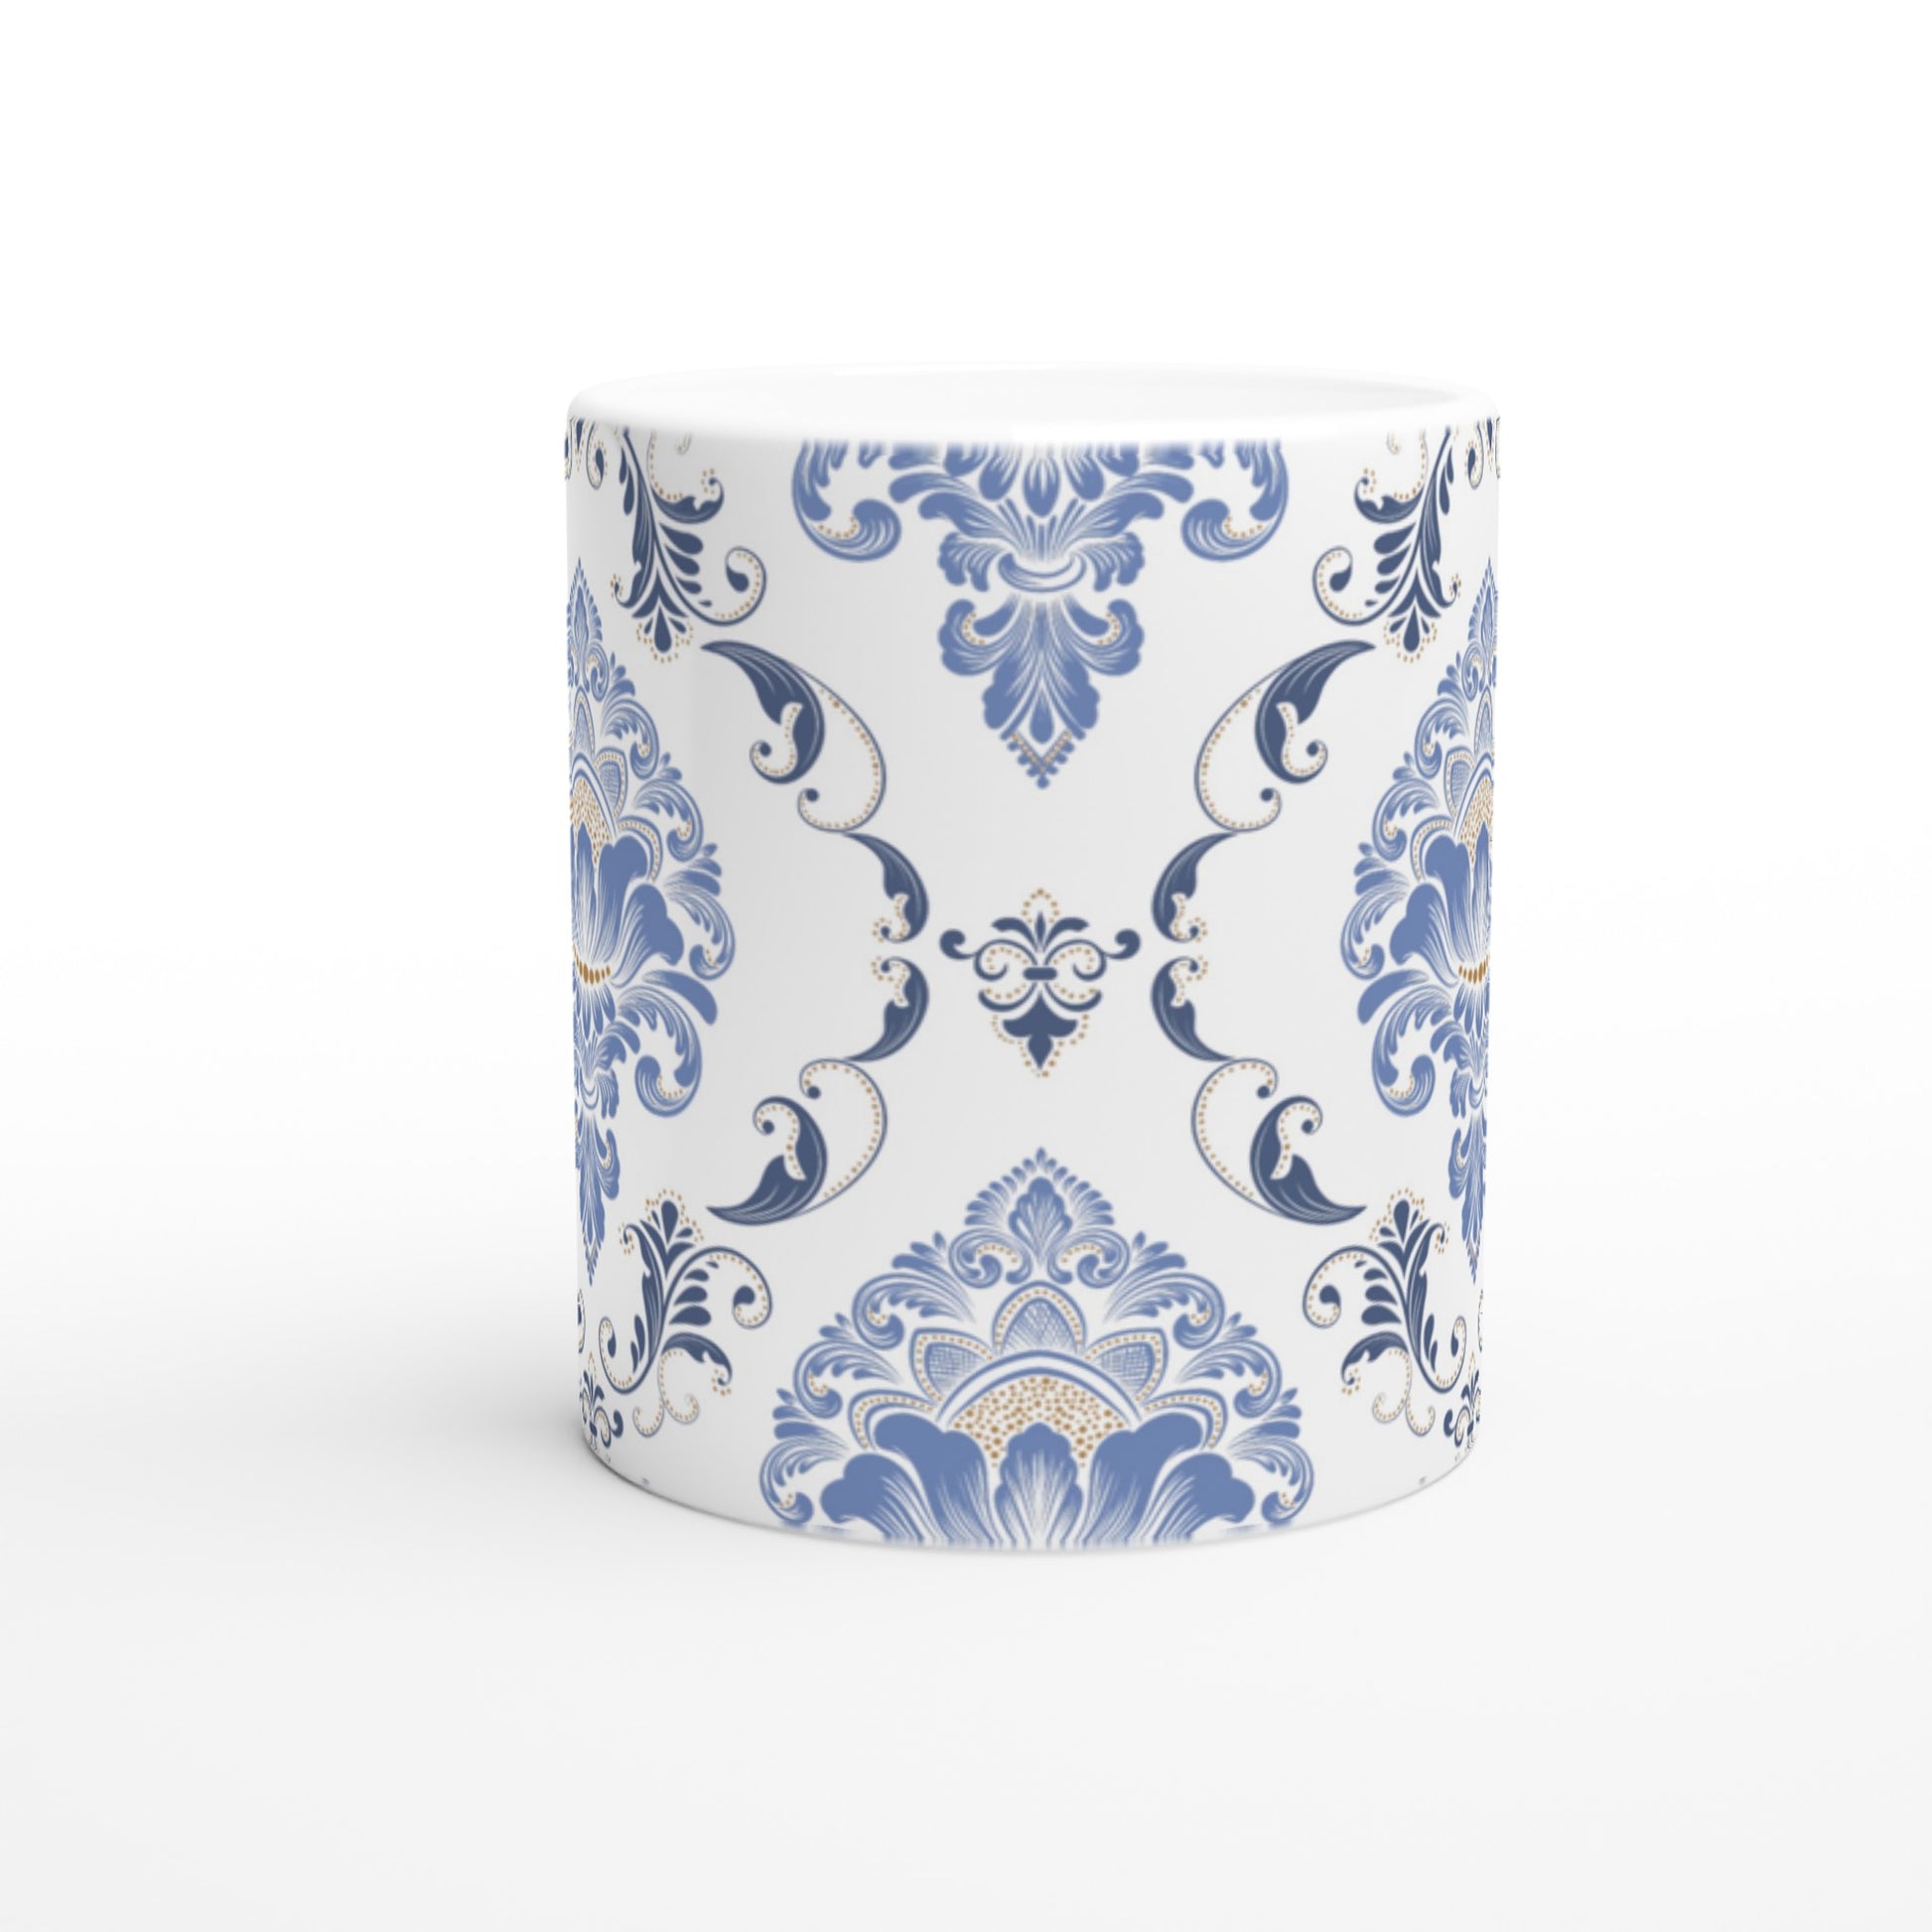 Bonita taza de cerámica con estilo victoriano